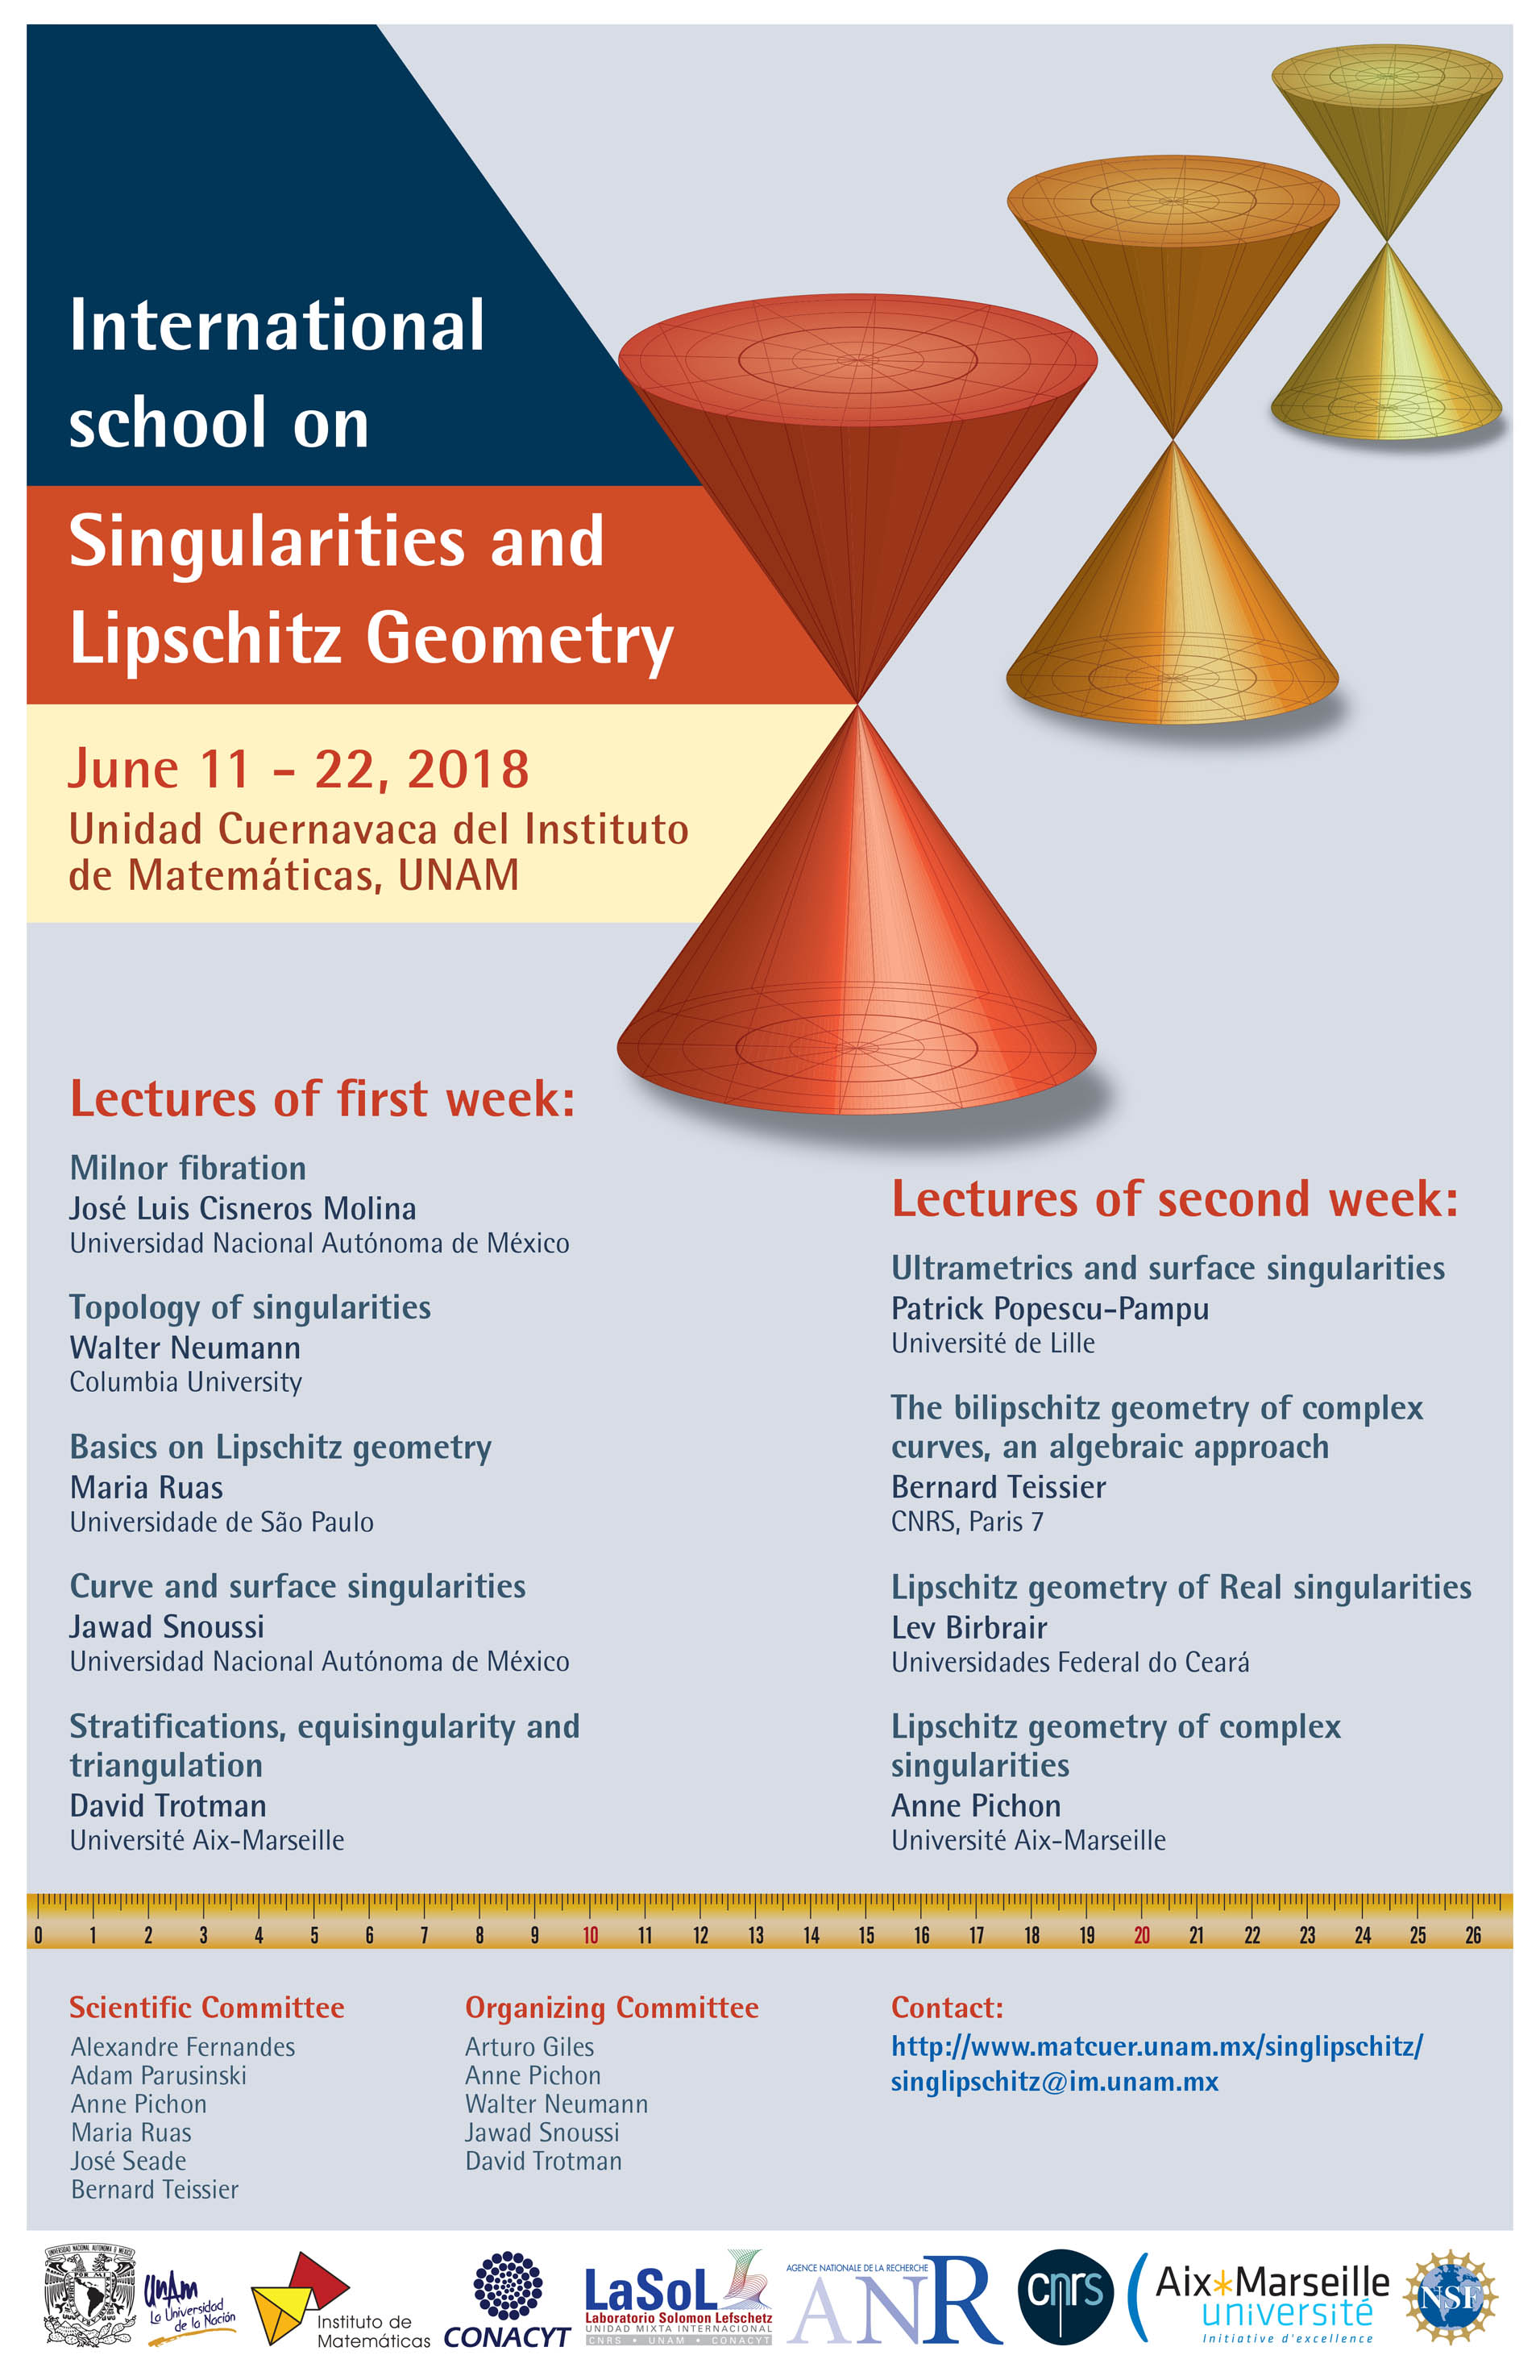 International School on Singularities and Lipschitz Geometry